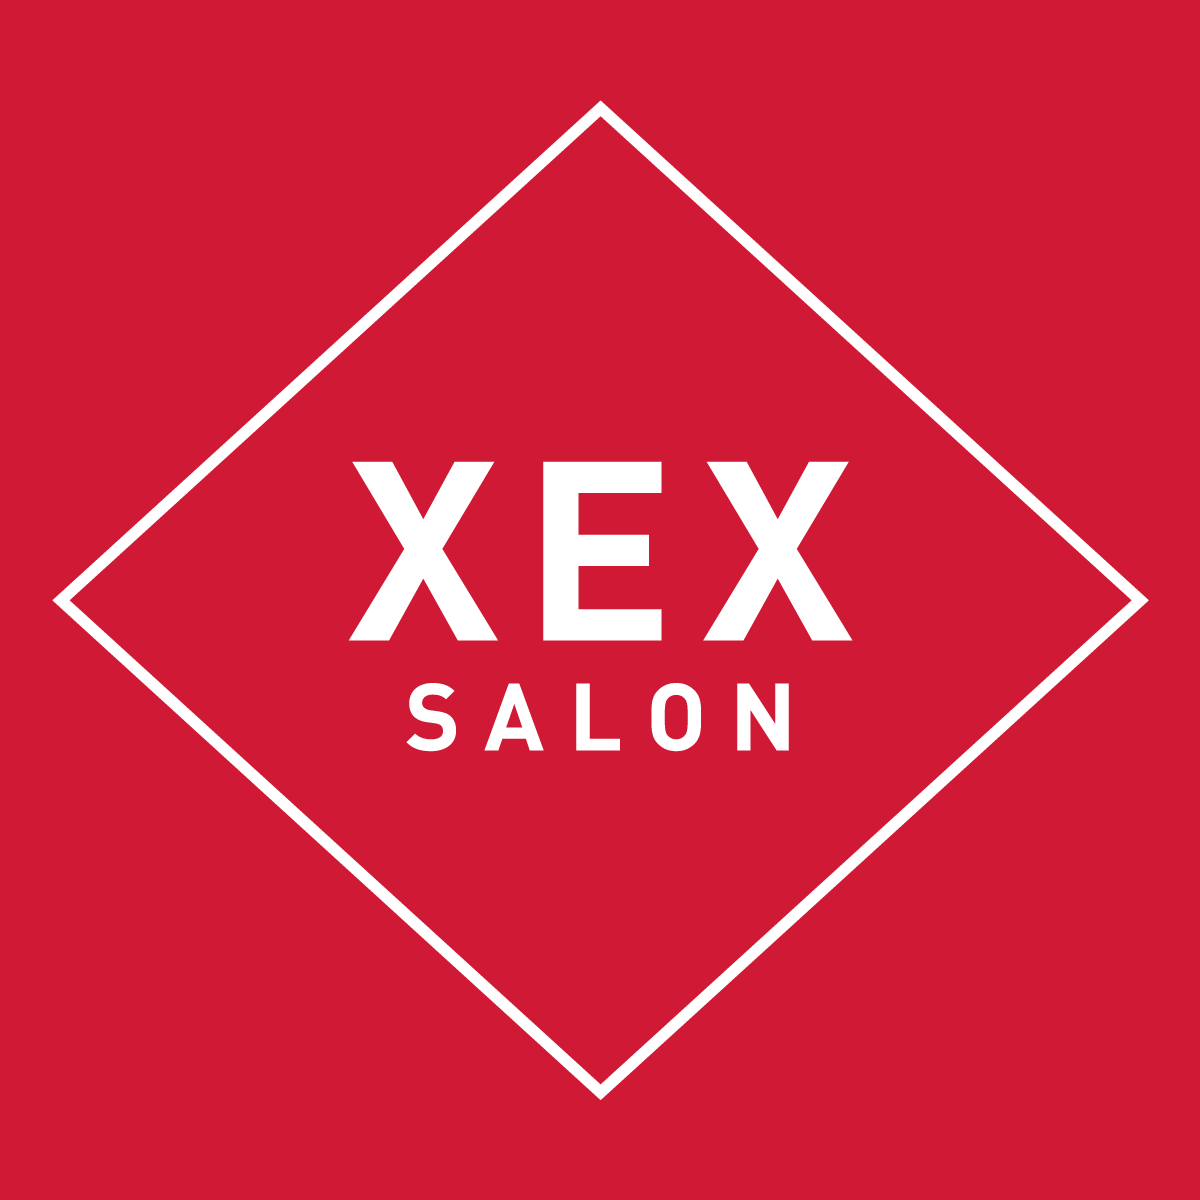 XEX Salon - Chicago, IL 60601 - (312)372-9211 | ShowMeLocal.com